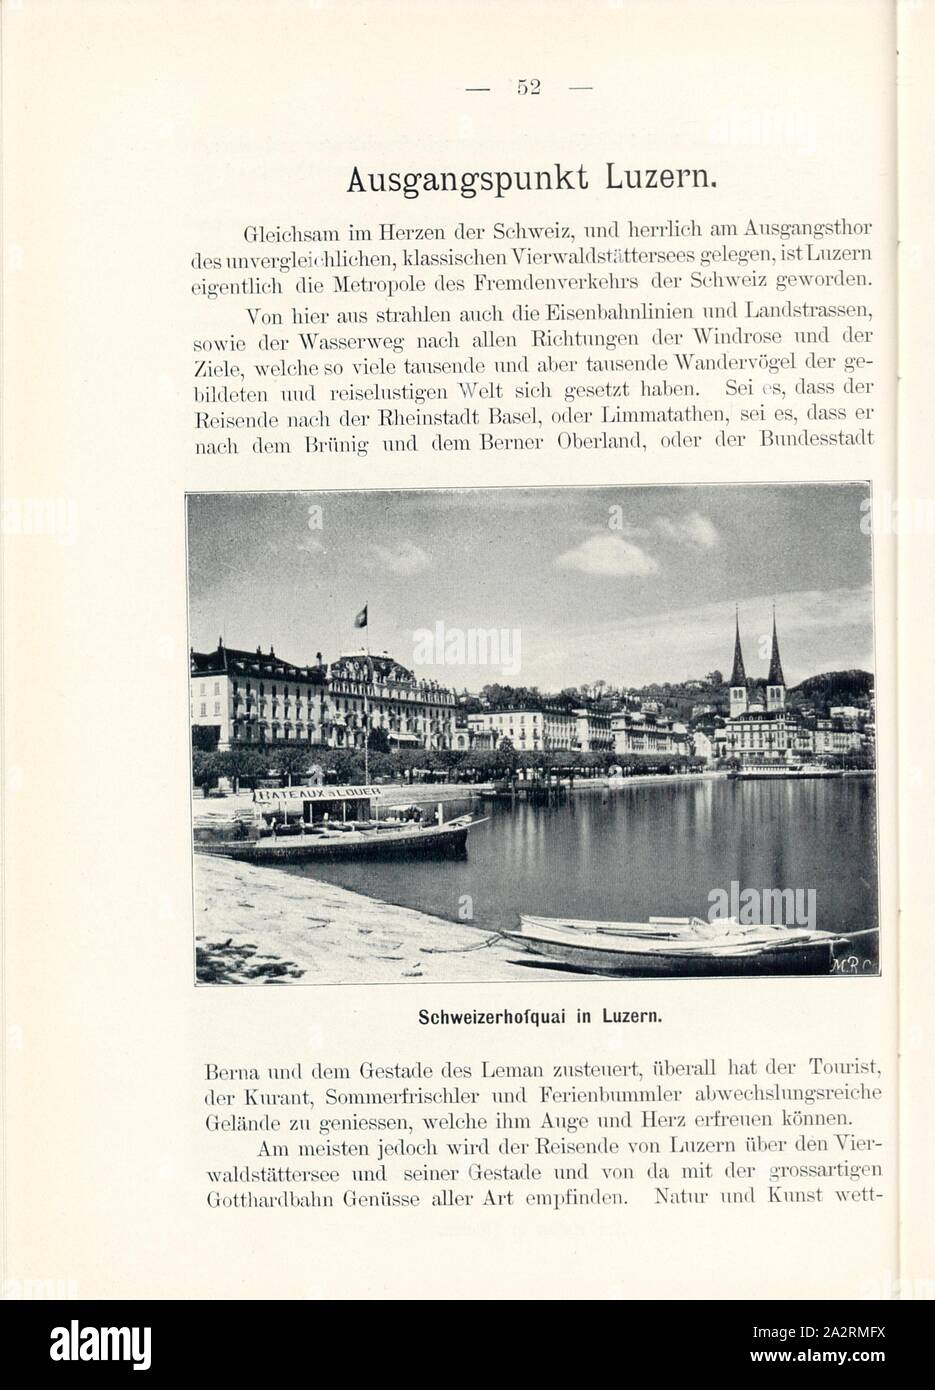 Schweizerhofquai in Lucerne, Lake Lucerne in the city of Lucerne, Signed: M.R.C, Fig. 53, p. 52, Meisenbach, Riffarth und Co. (imp.), 1900, J. Knobel: Illustrierter Reisebegleiter für die Alpenstrasse des Klausen und ihre Zufahrtslinien. Glarus: Buchdruckerei J. Spälti, 1900 Stock Photo